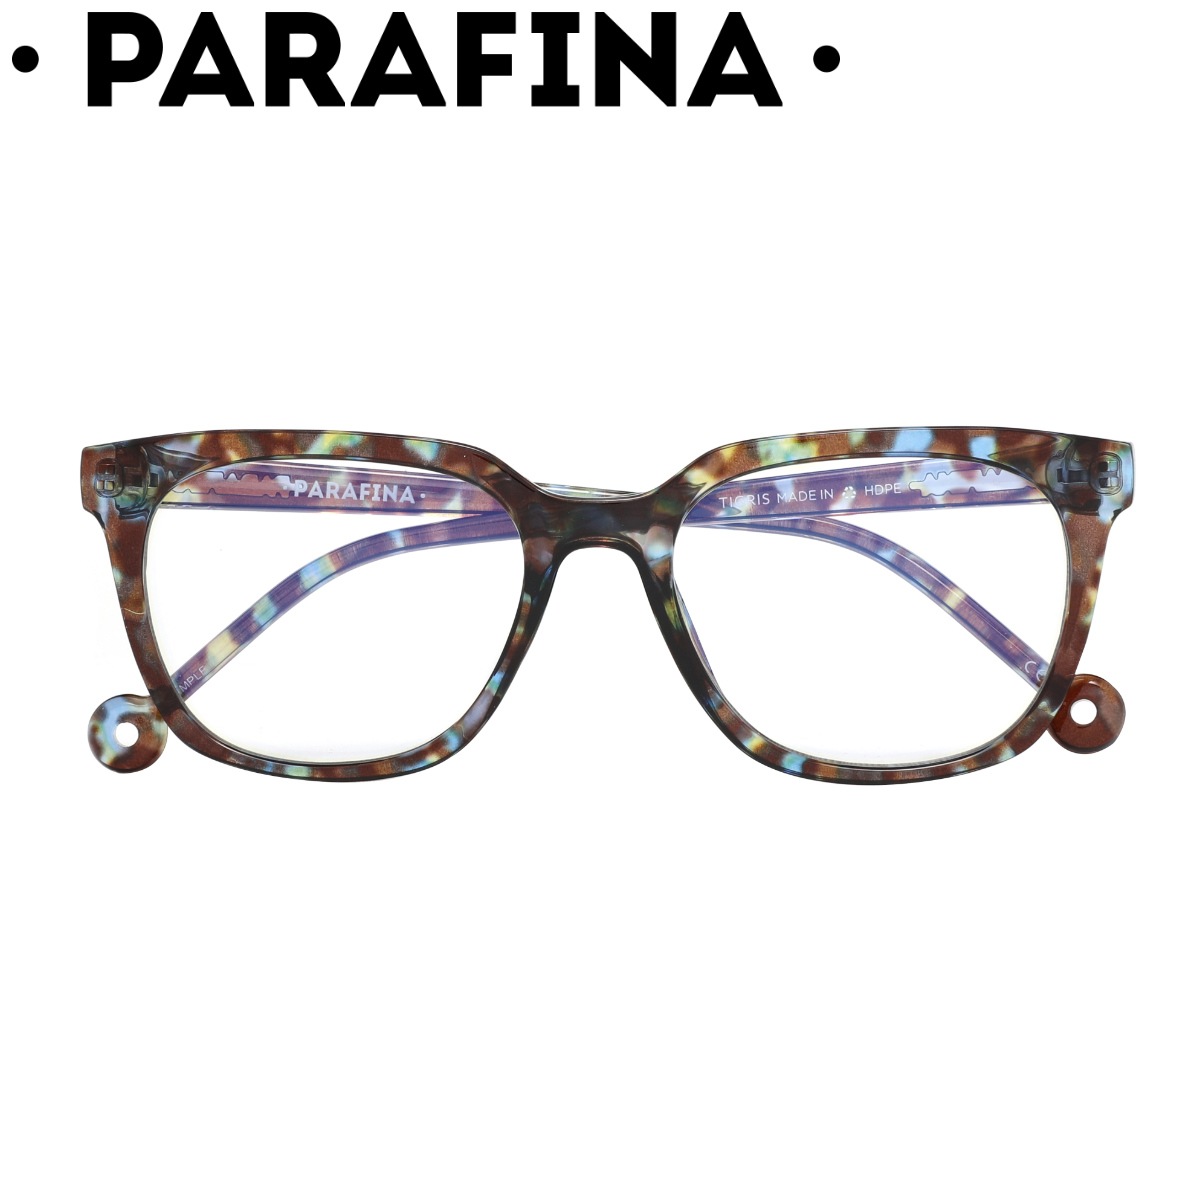 リーディンググラス PARAFINA TIGRIS TRT BLUE 0.0ー2.5 ブルーライトカット 老眼鏡 メガネ おしゃれ 軽量 フレーム 眼鏡 めがね ブルーライト 反射防止